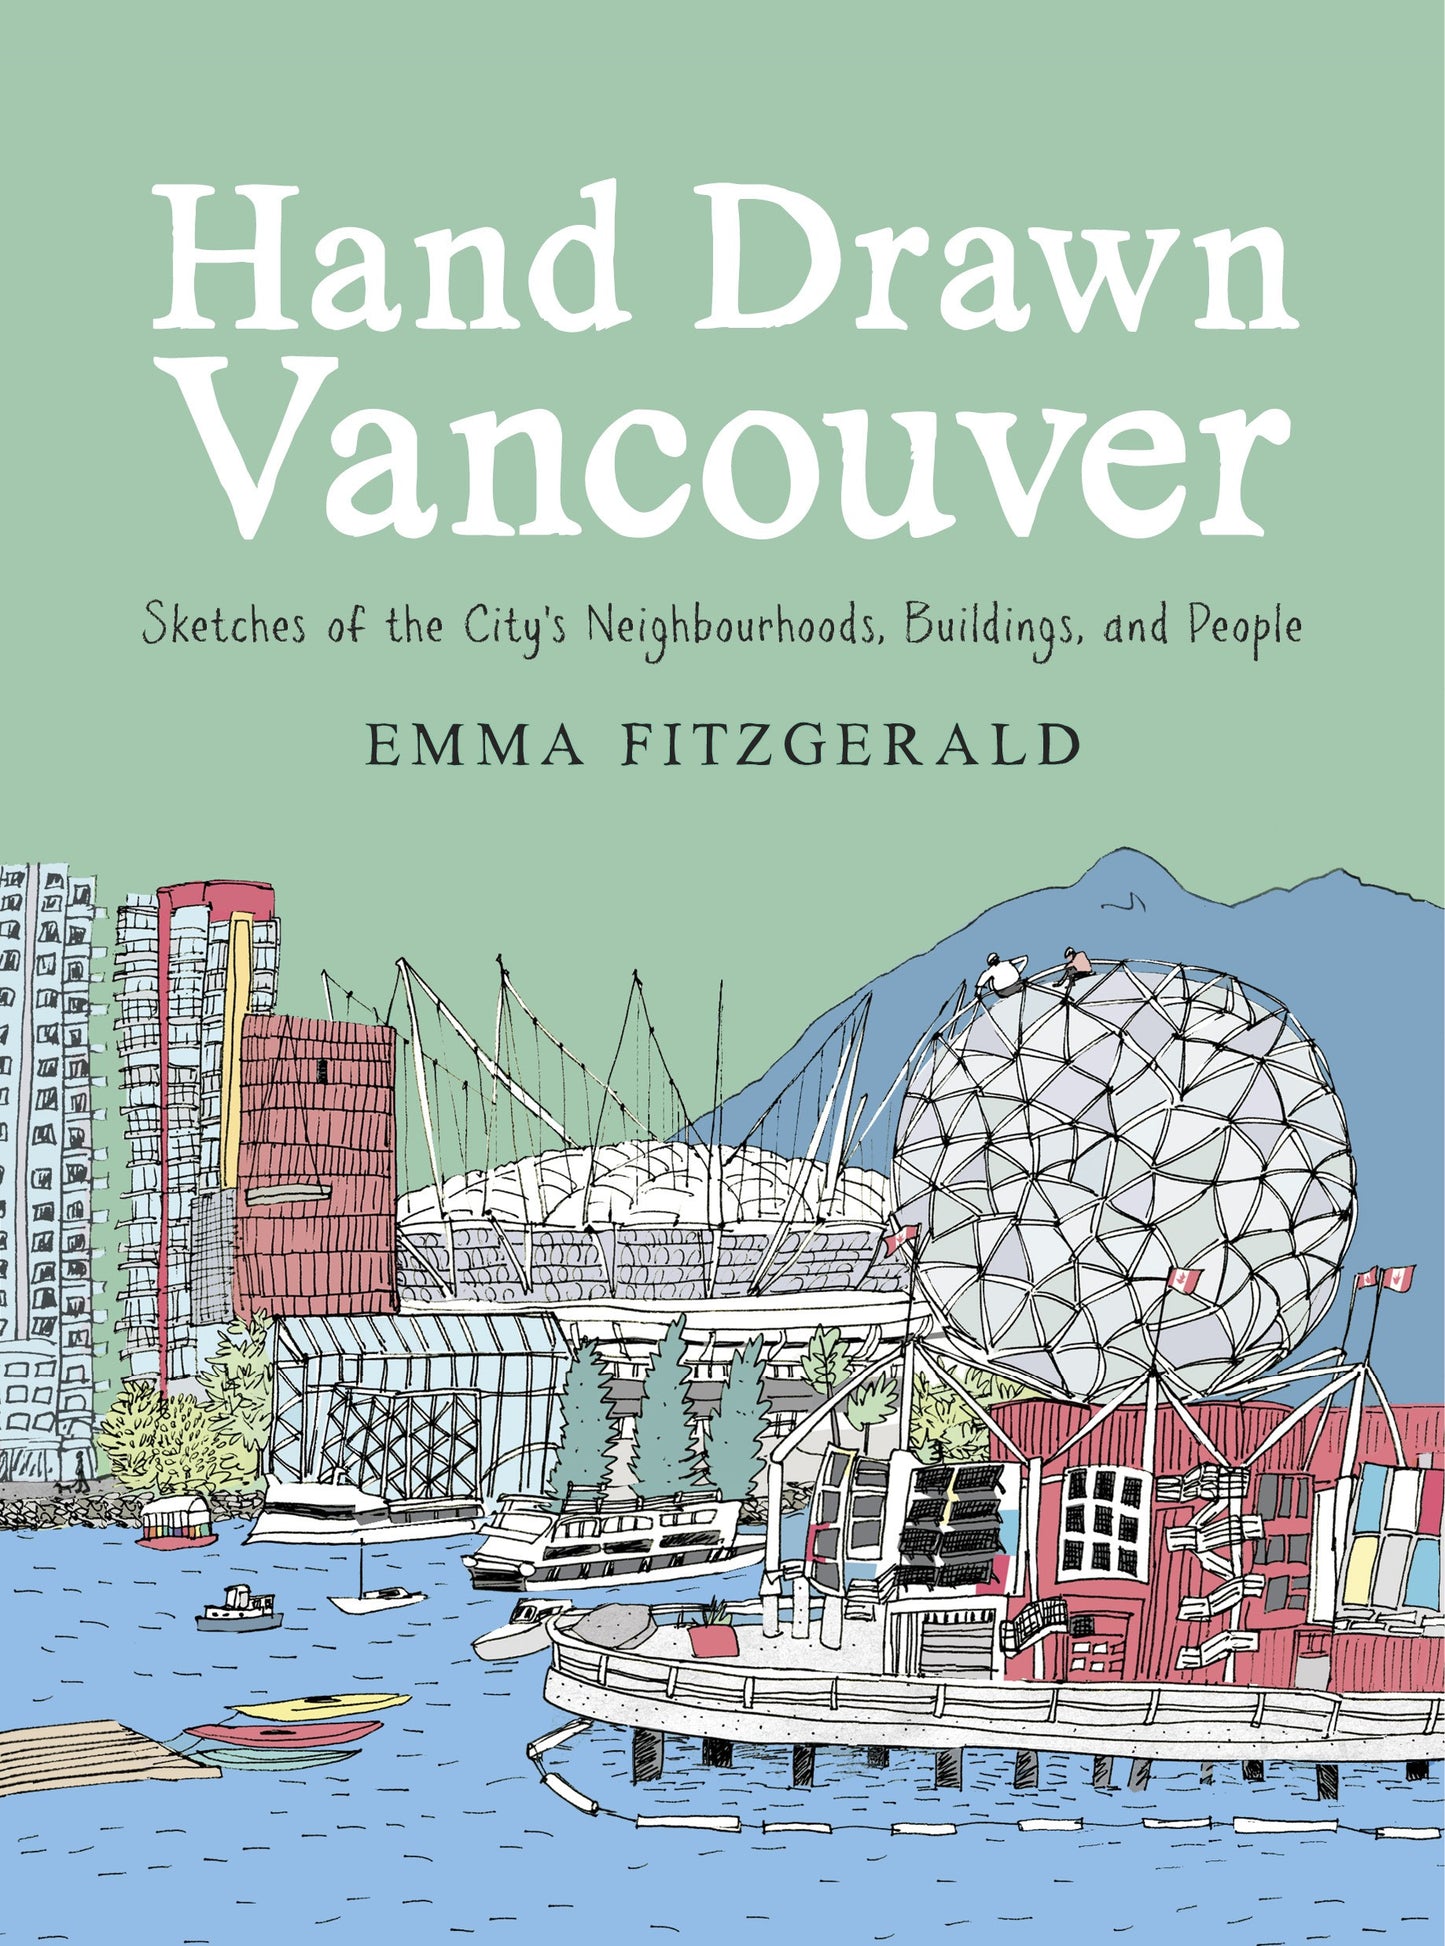 Libro de Vancouver dibujado a mano